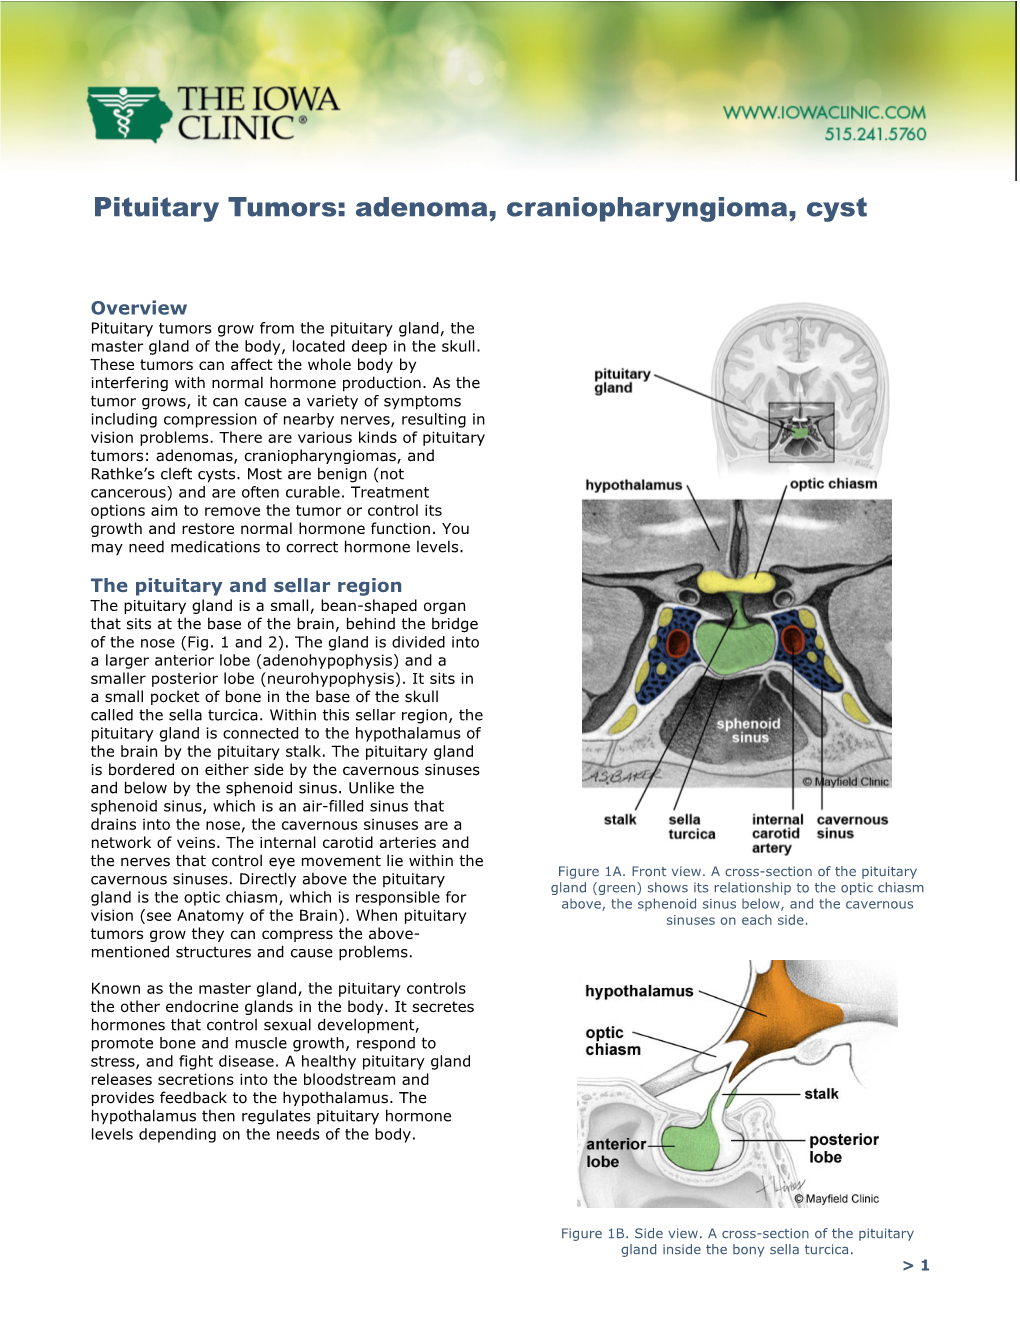 Pituitary Tumors: Adenoma, Craniopharyngioma, Cyst